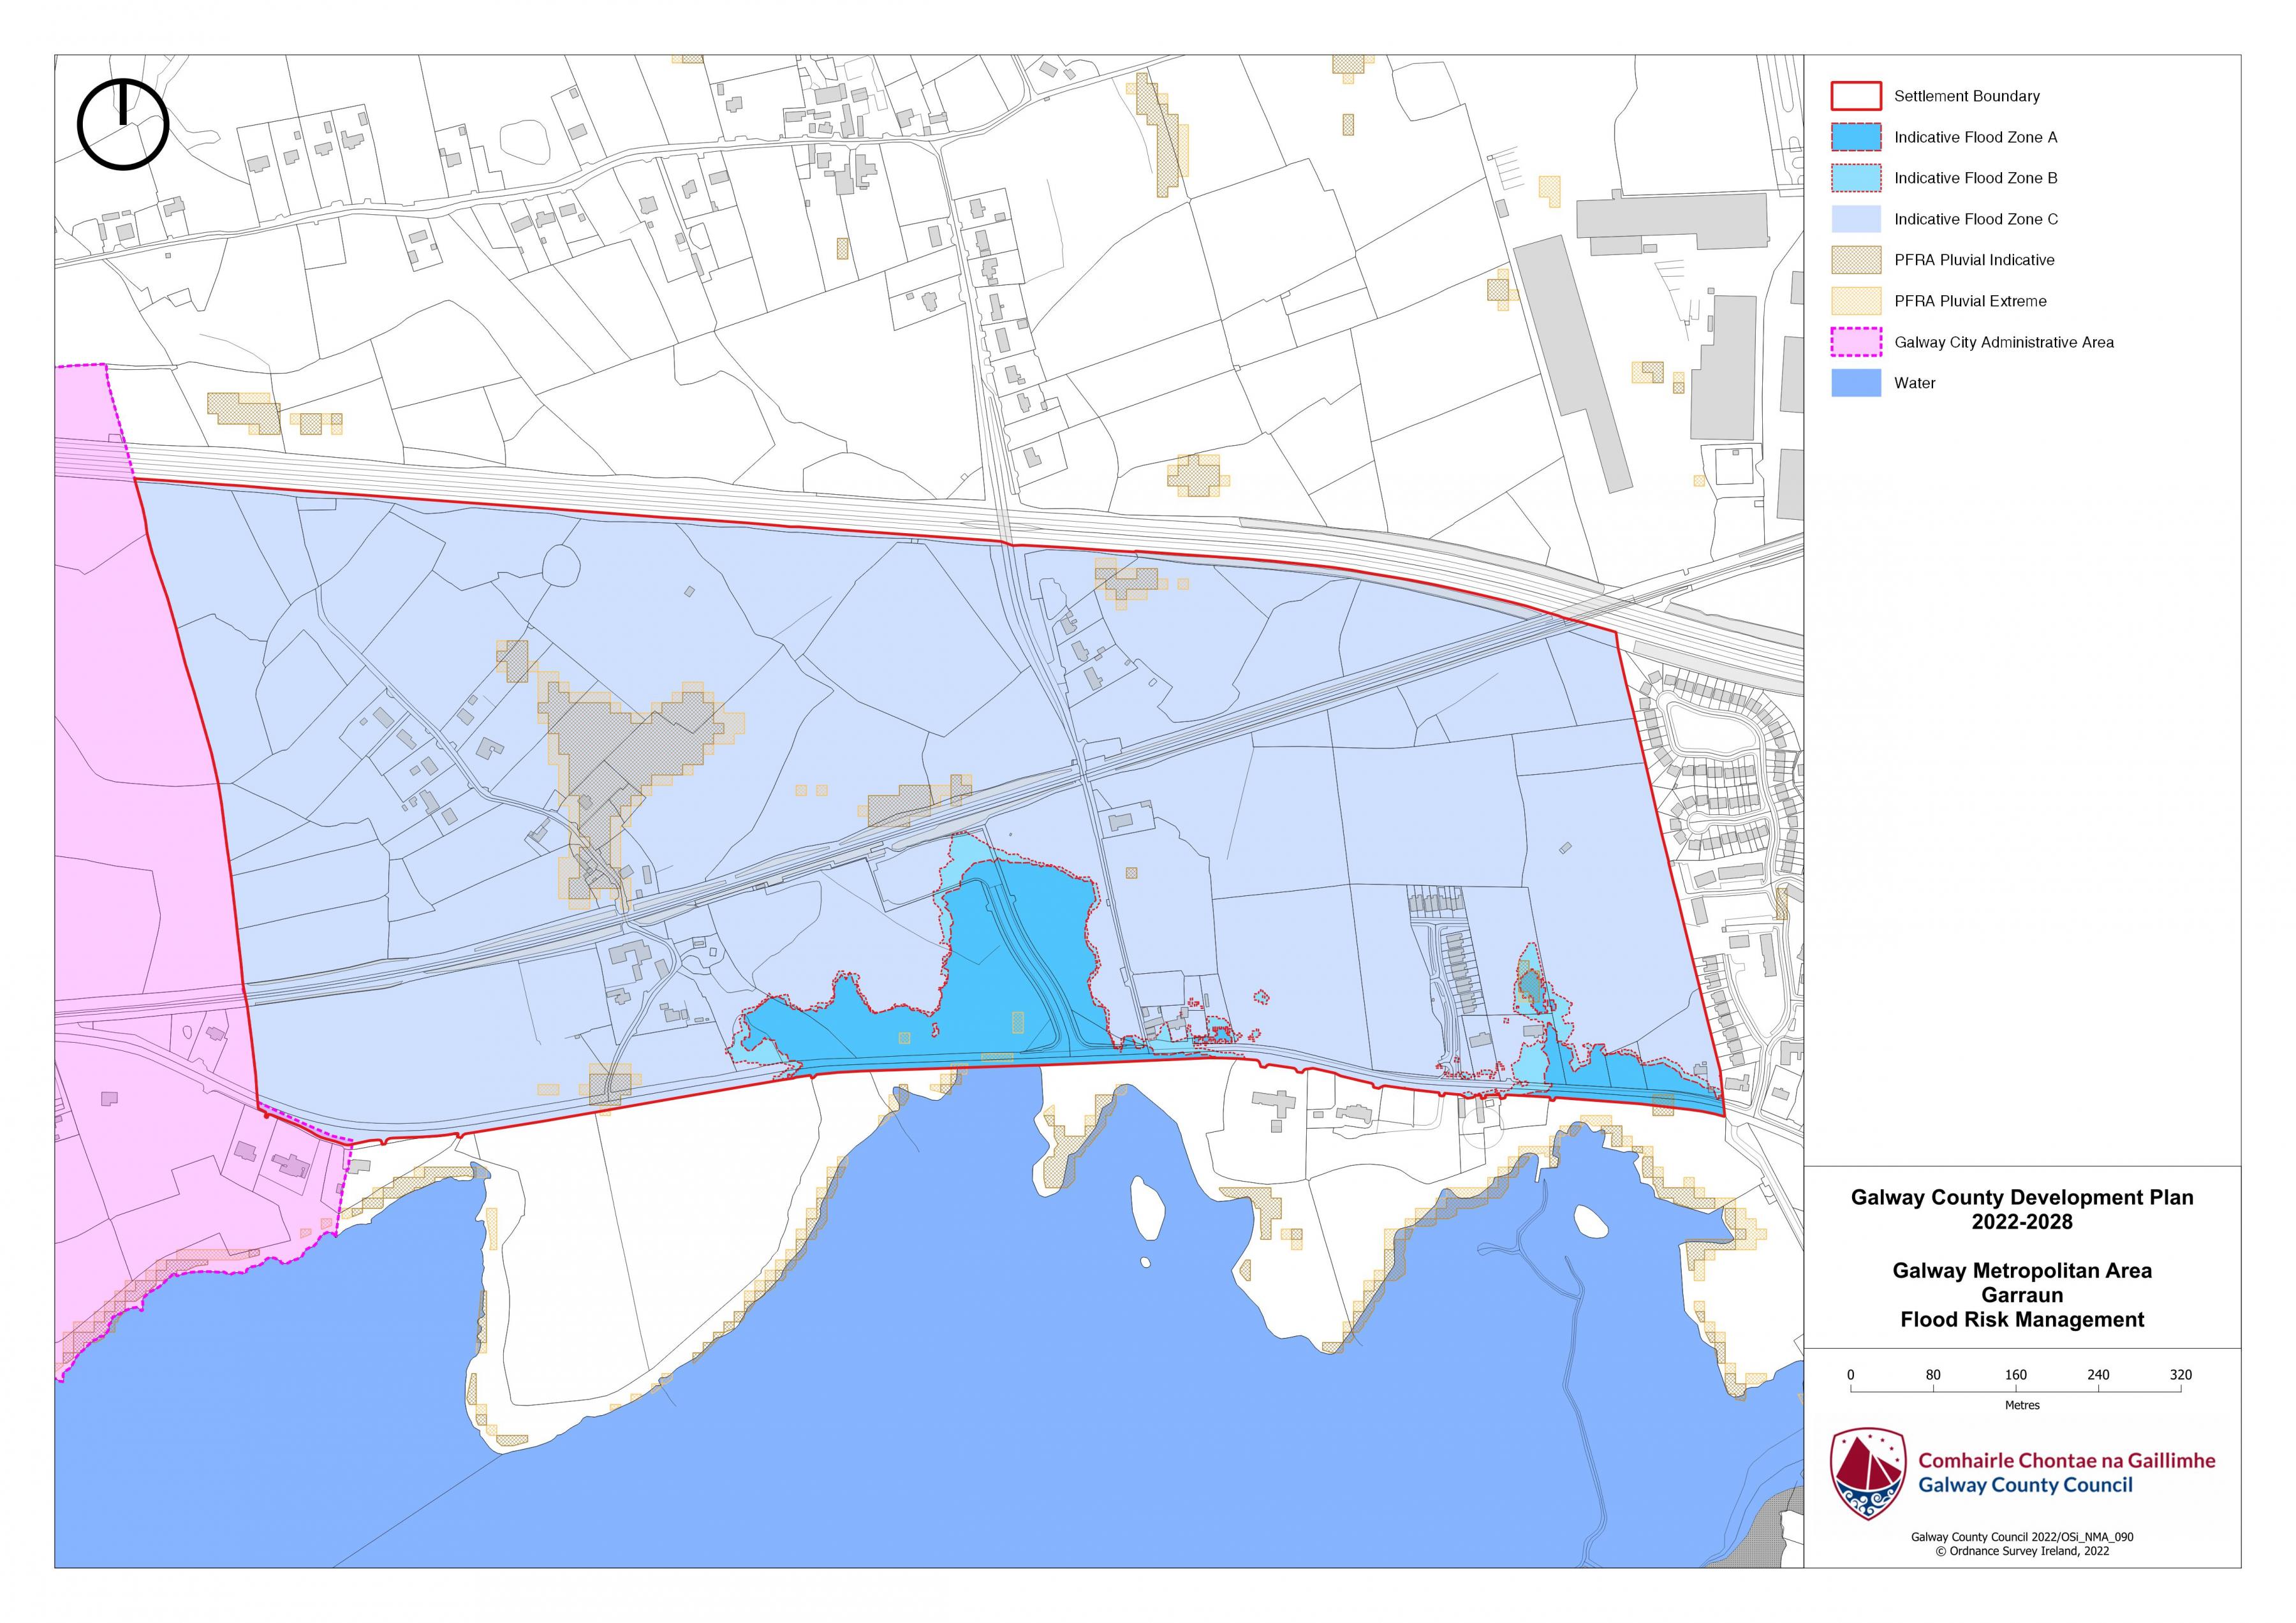 Garraun Flood Risk Management Map